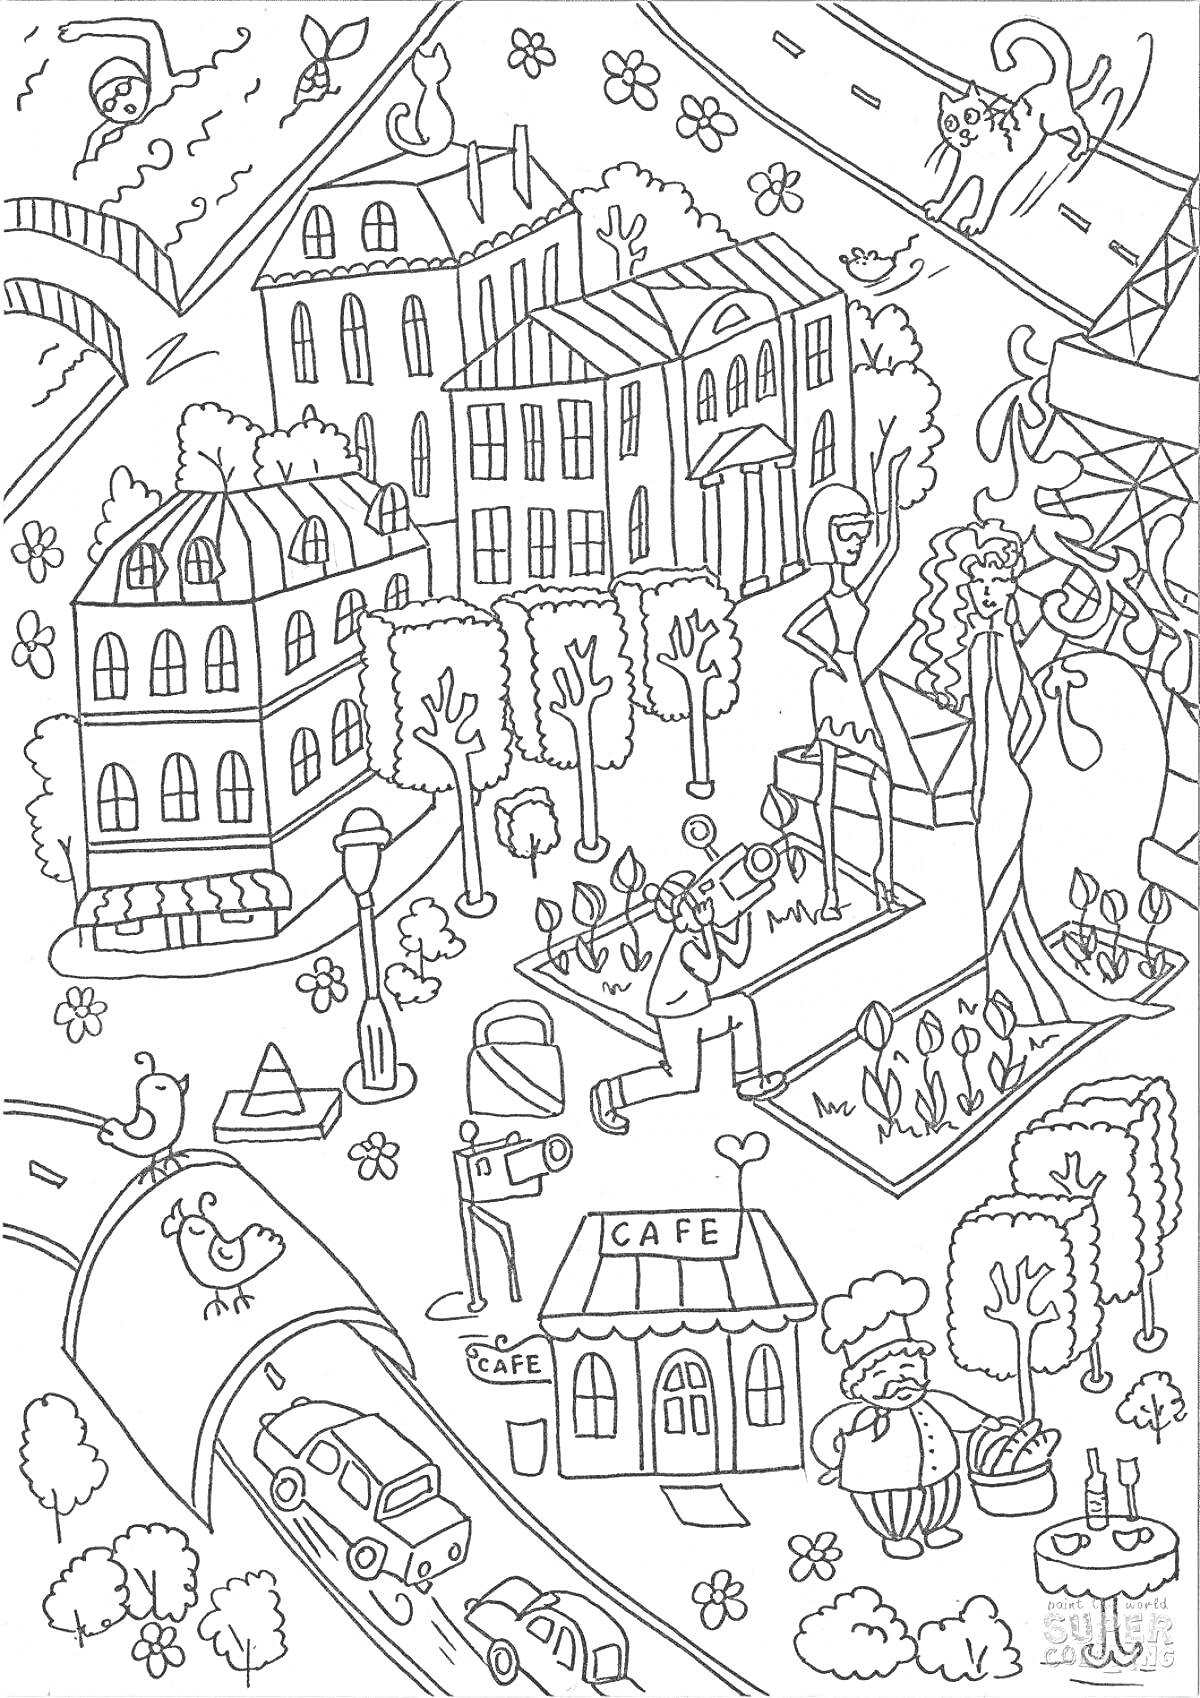 На раскраске изображено: Здания, Кафе, Деревья, Мост, Статуя, Цветы, Птица, Животные, Человек, Кот, Улицы, Авто